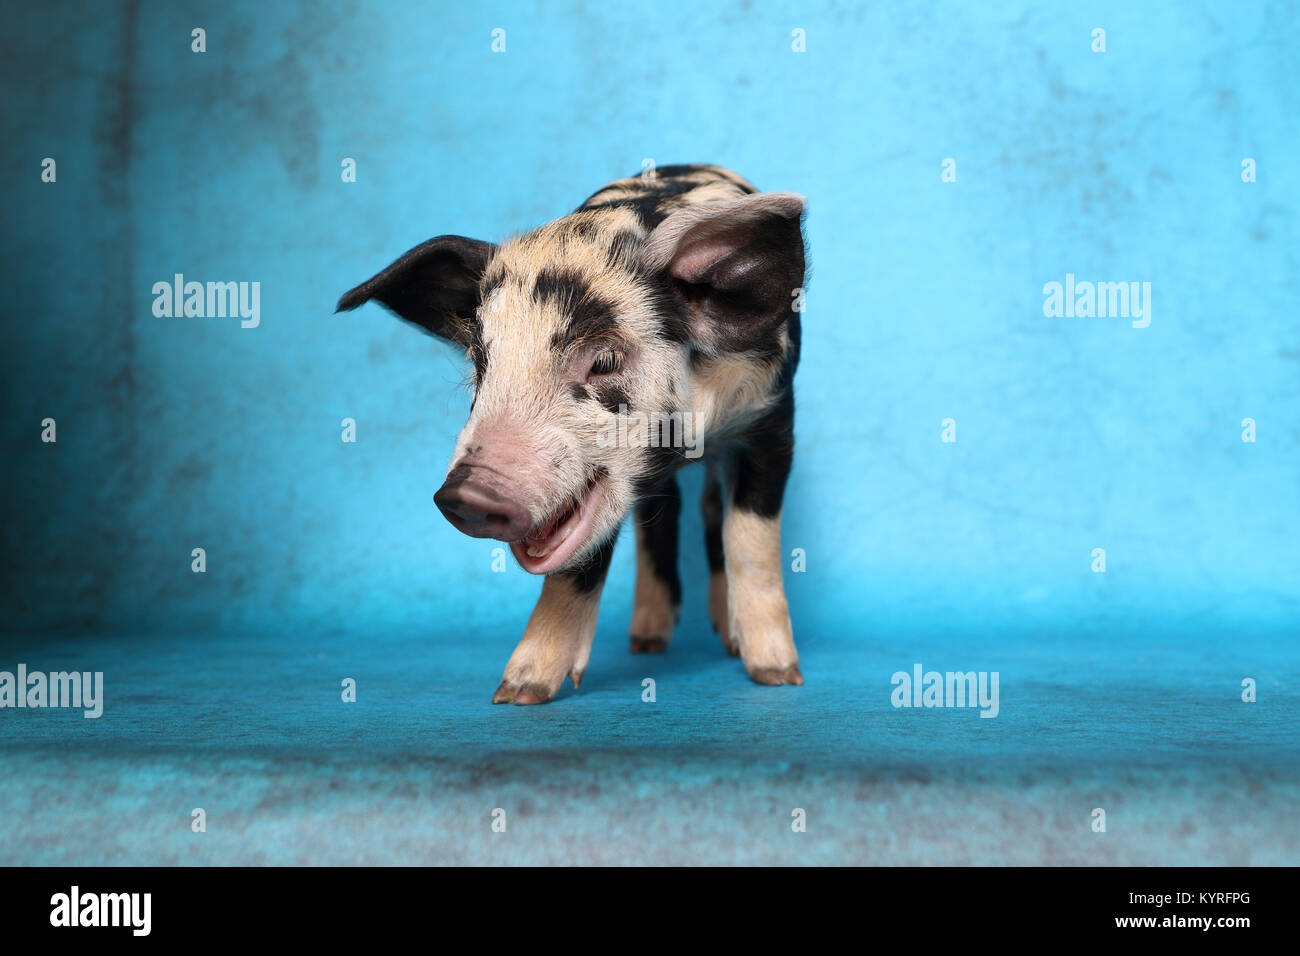 Porc domestique, Turopolje x ?. Porcinet (2 semaines). Studio photo vu sur un fond bleu. Allemagne Banque D'Images